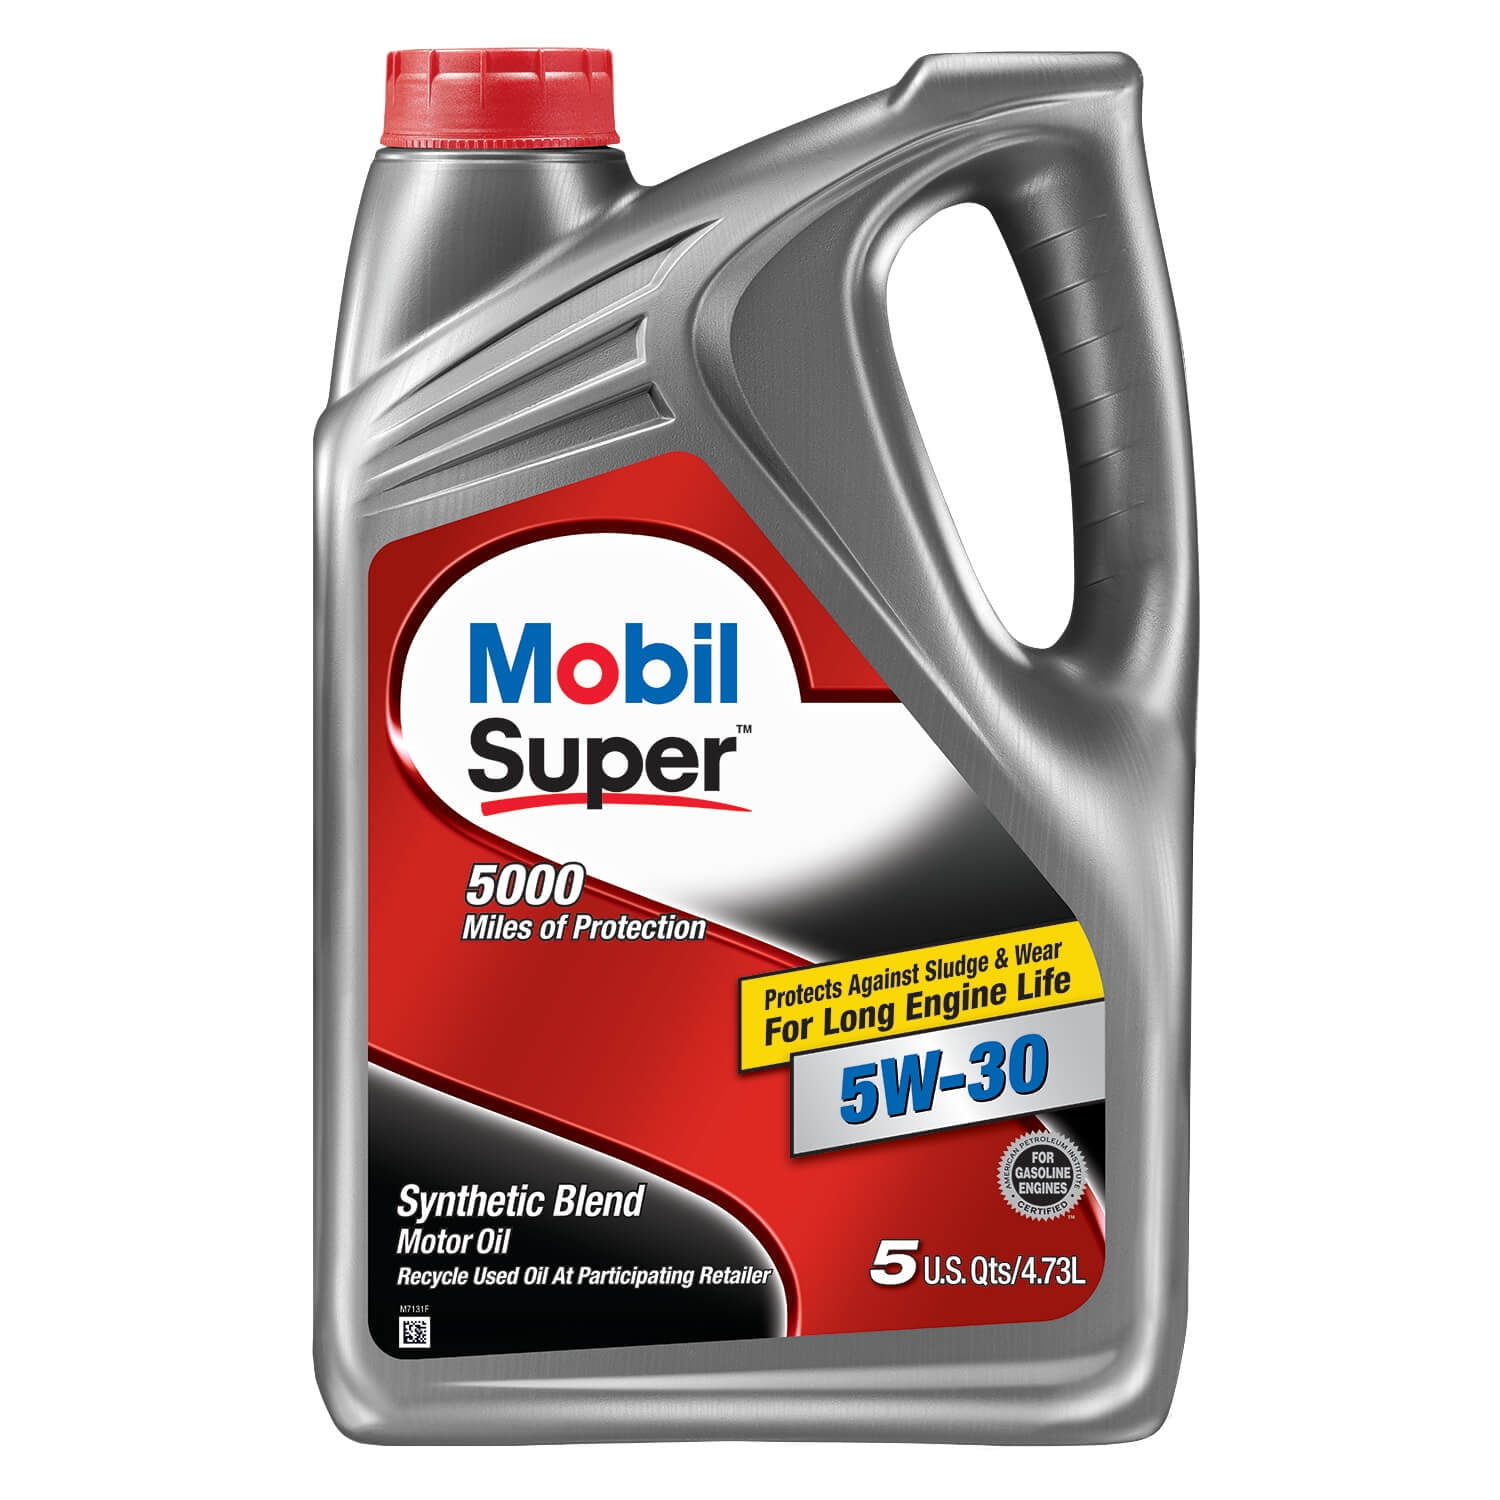 Mobil Super Synthetic Blend Motor Oil 5w 30 5 Quart Walmart Com